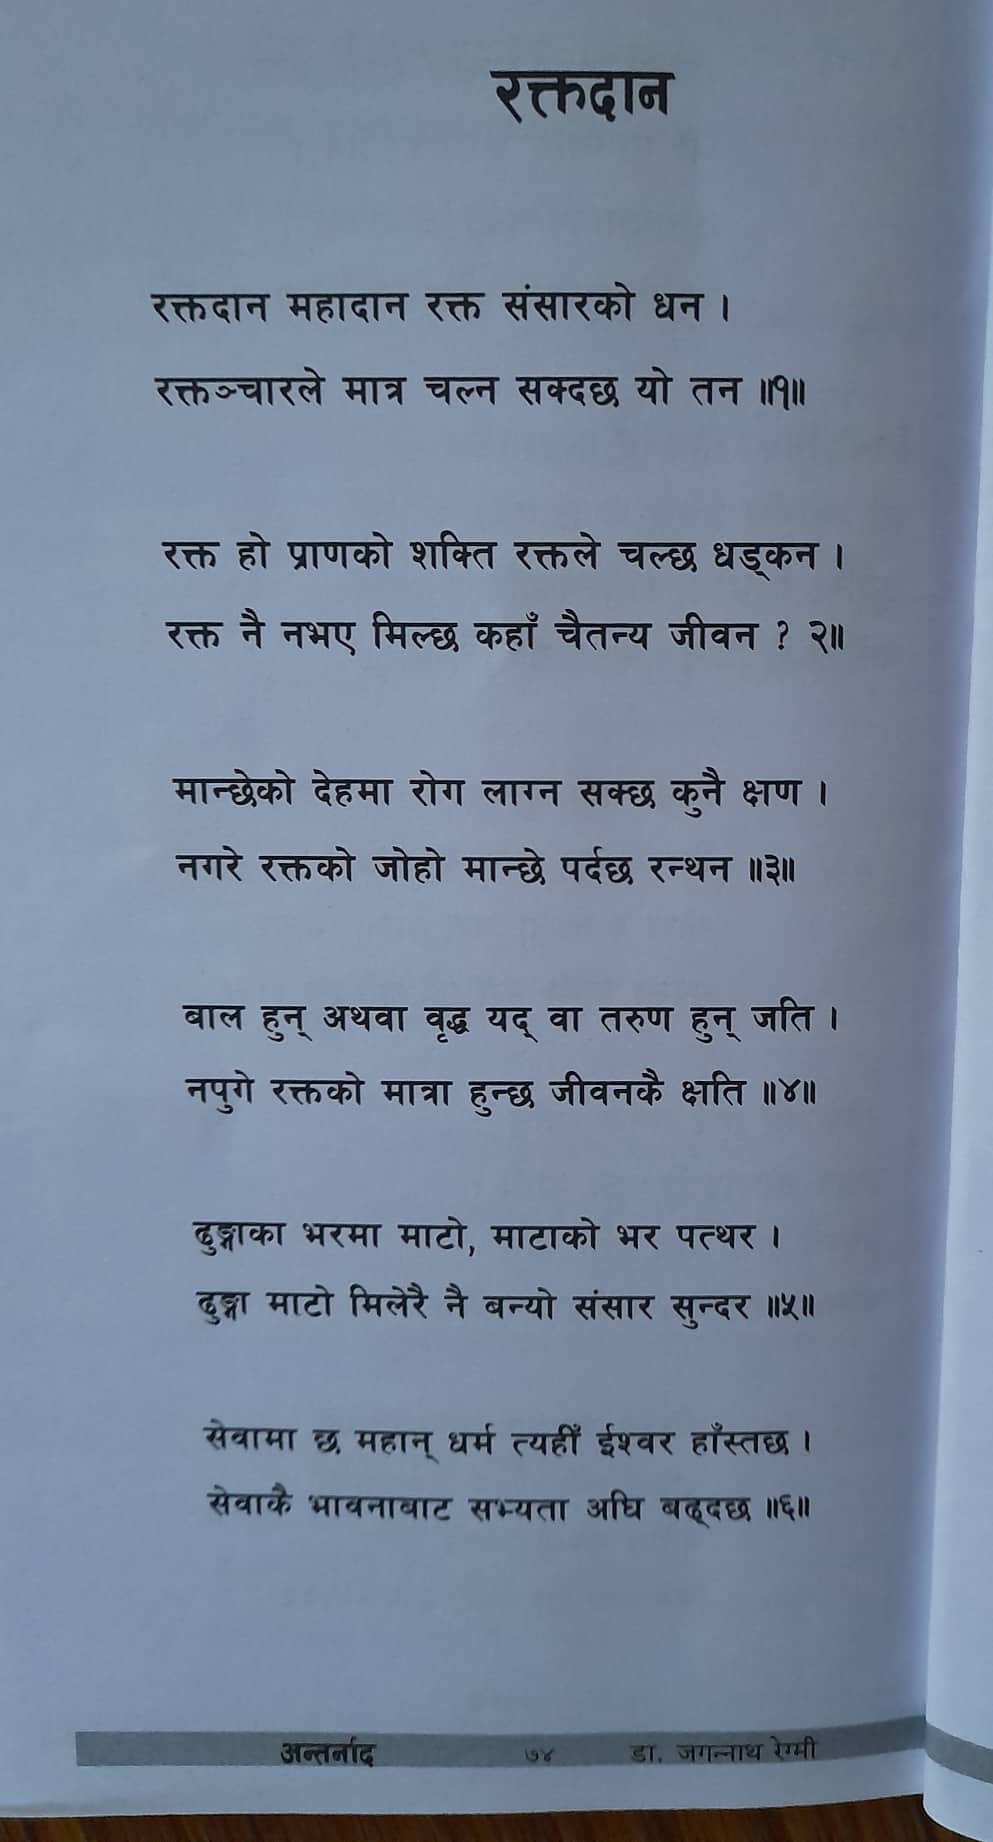 रक्तदानको अवसरमा नेपाल सँस्कृत माध्यमिक विद्यालयका उप–प्राध्यापक डा। जगन्नाथ रेग्मीद्धारा प्रस्तुत गरिएको कविता